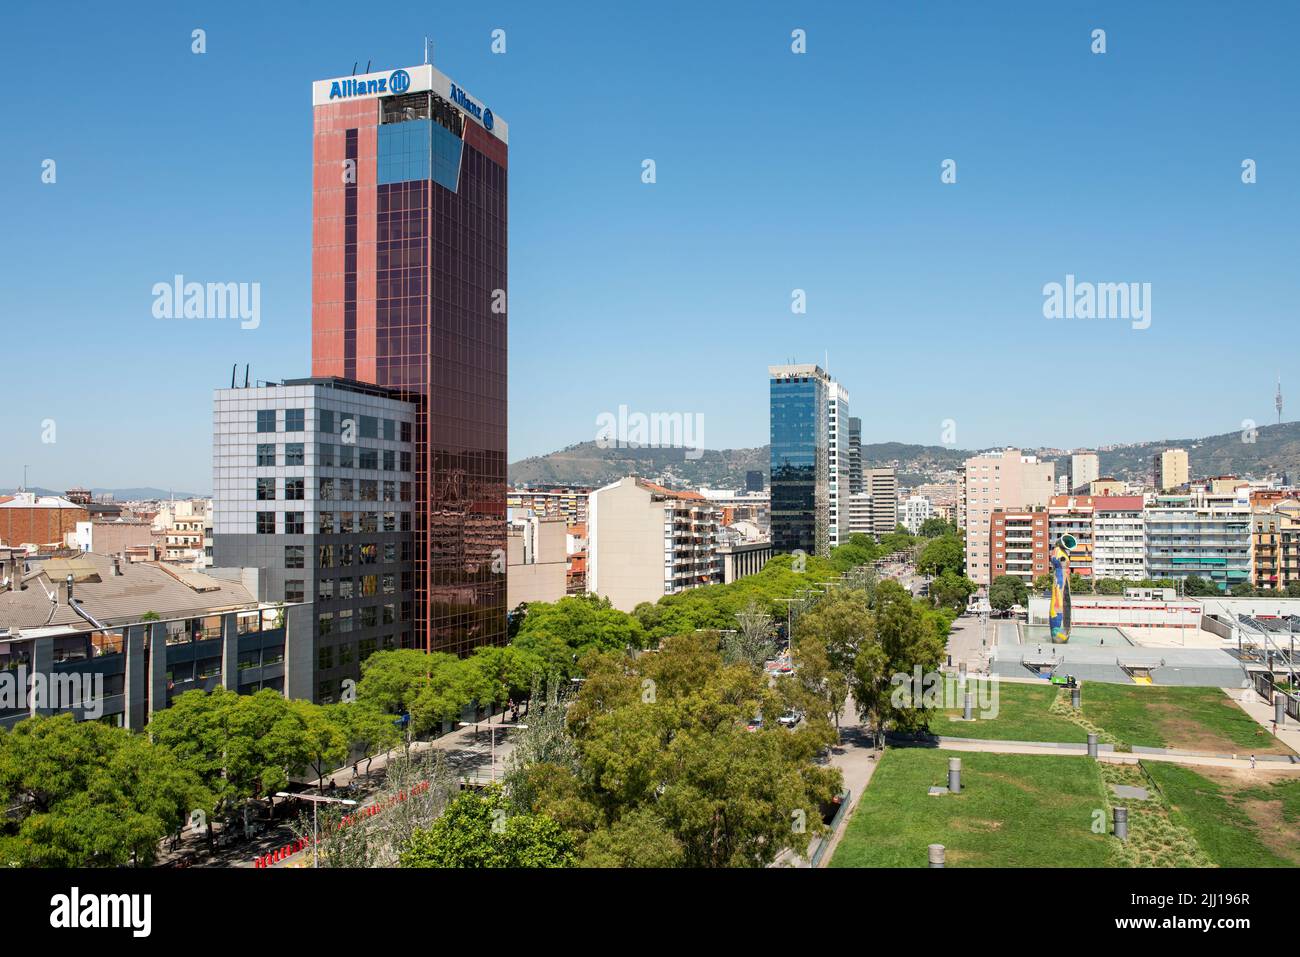 Parc de Joan Miró in Barcelona, Spain Stock Photo